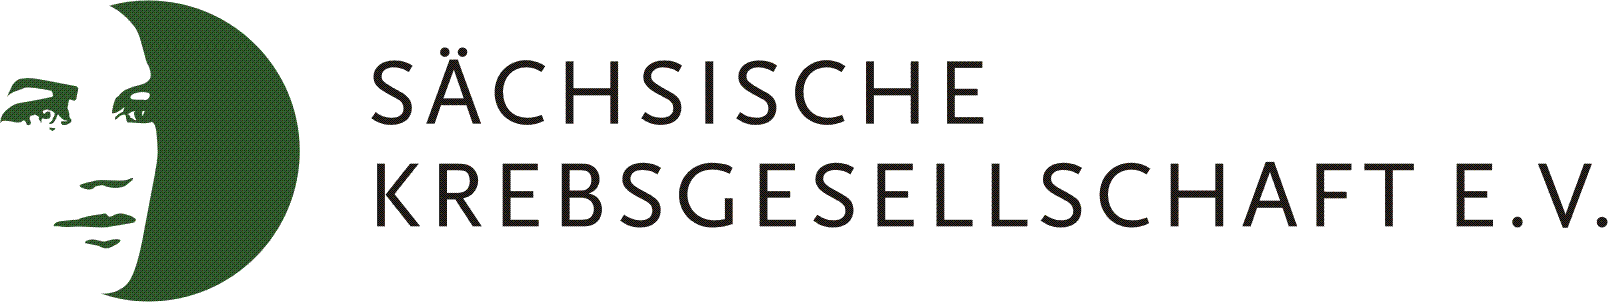 SKG_Logo_07.png